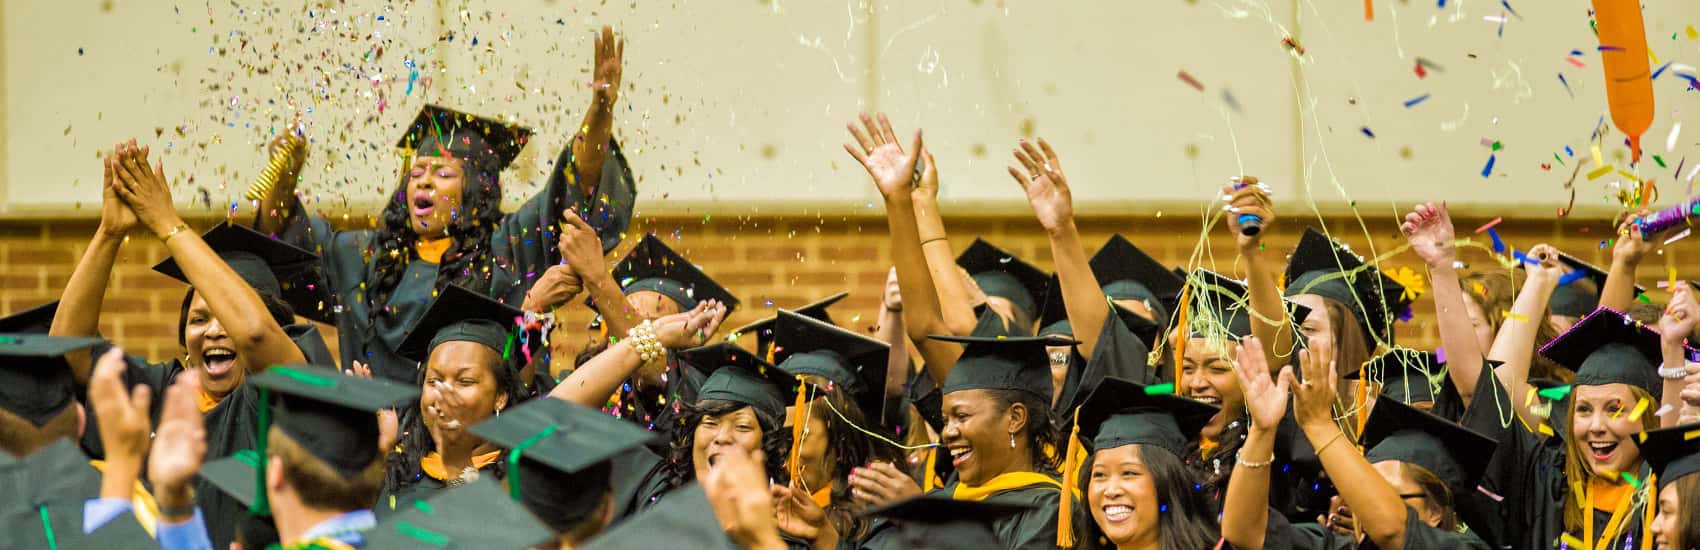 Graduates throwing confetti